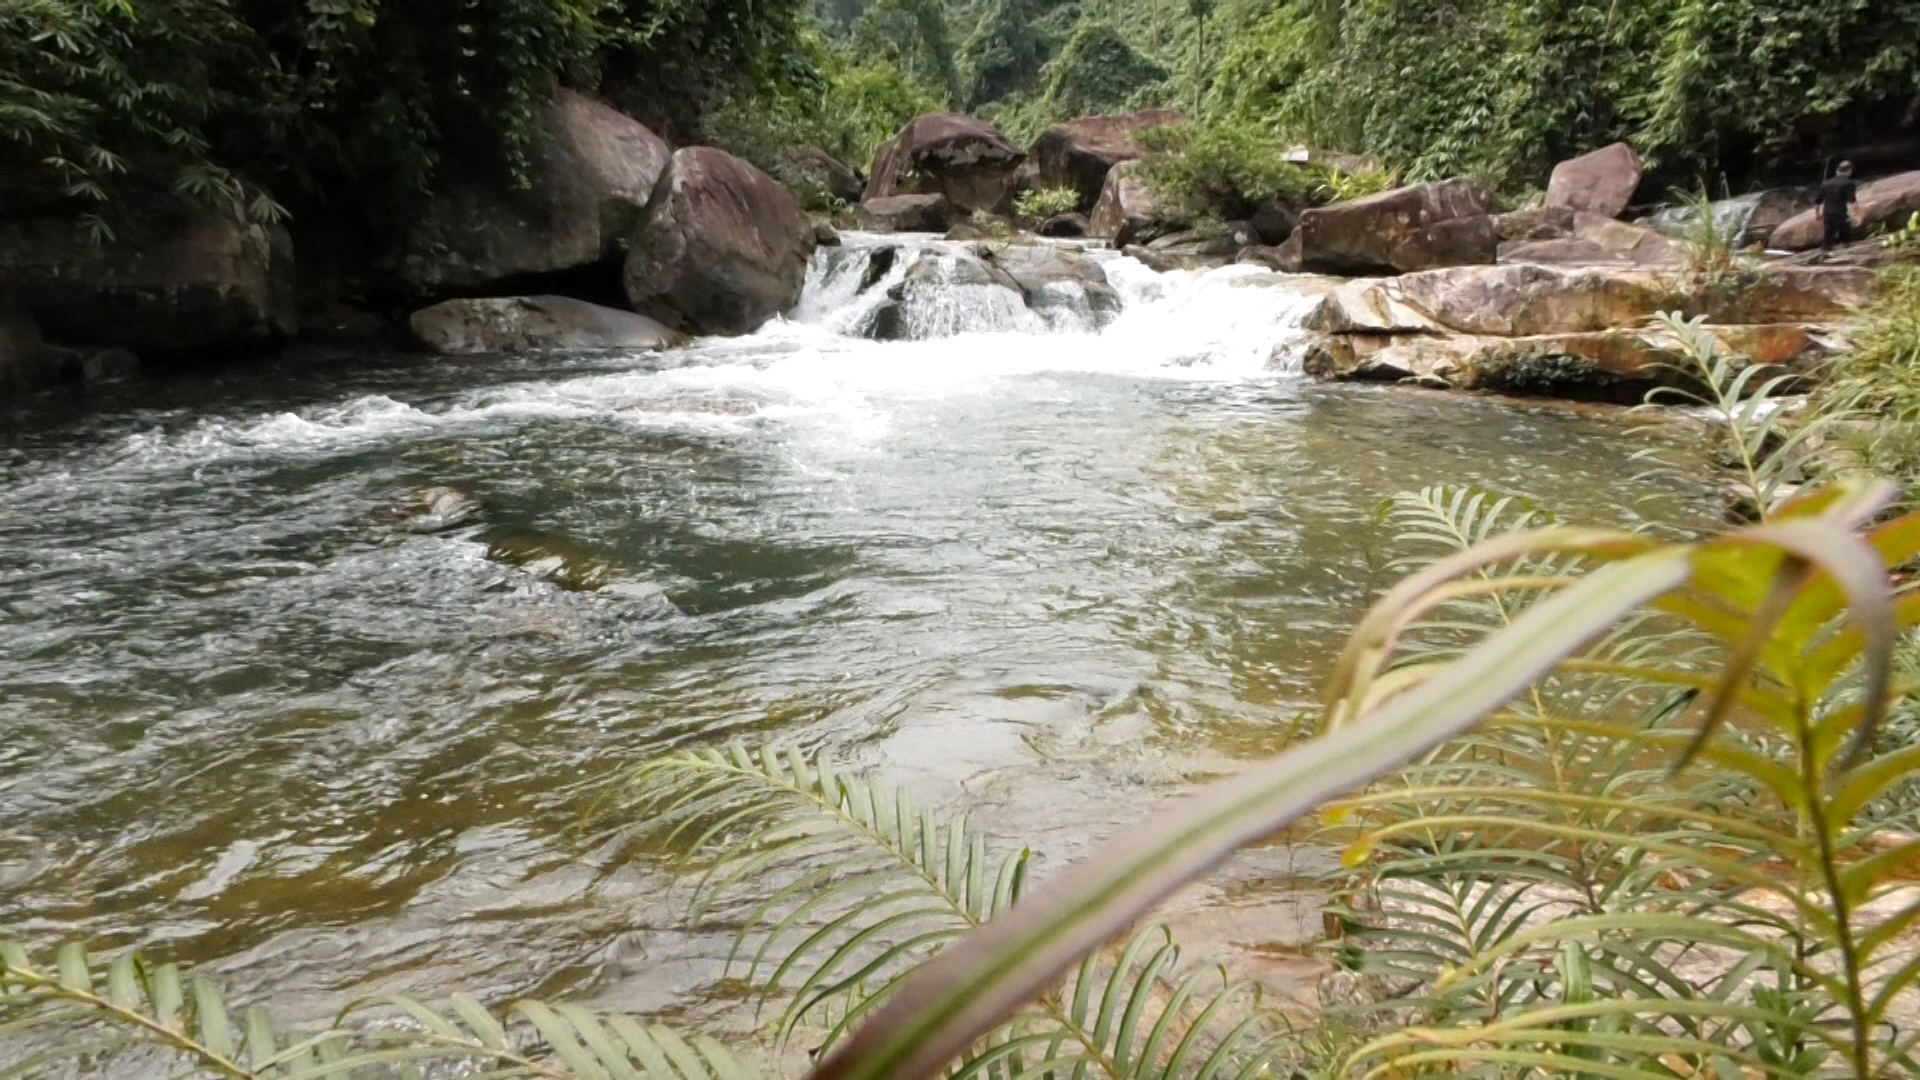 Đây là thác nước đẹp như phim ở Thanh Hóa, có lan rừng thơm, dưới suối vô số cá, tôm lạ mắt- Ảnh 3.